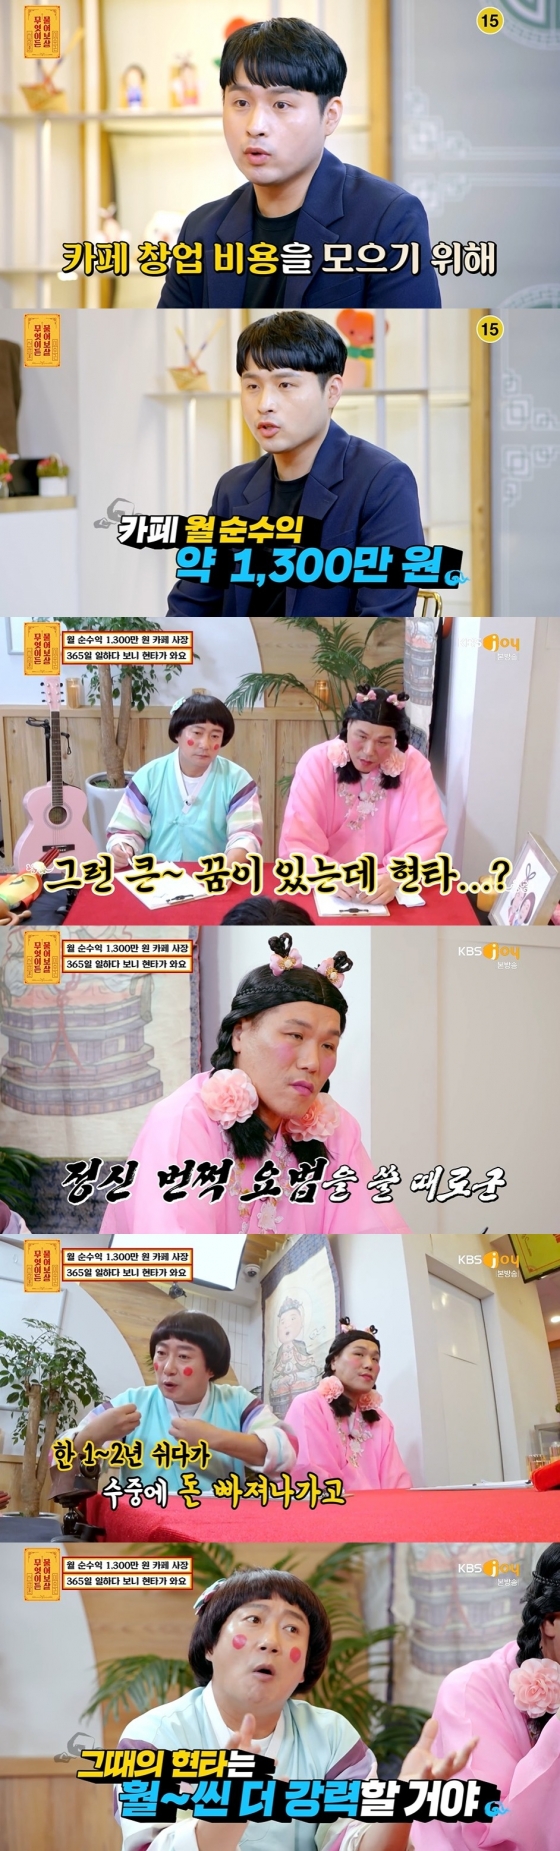 /사진=KBS Joy 예능프로그램 '무엇이든 물어보살' 방송화면